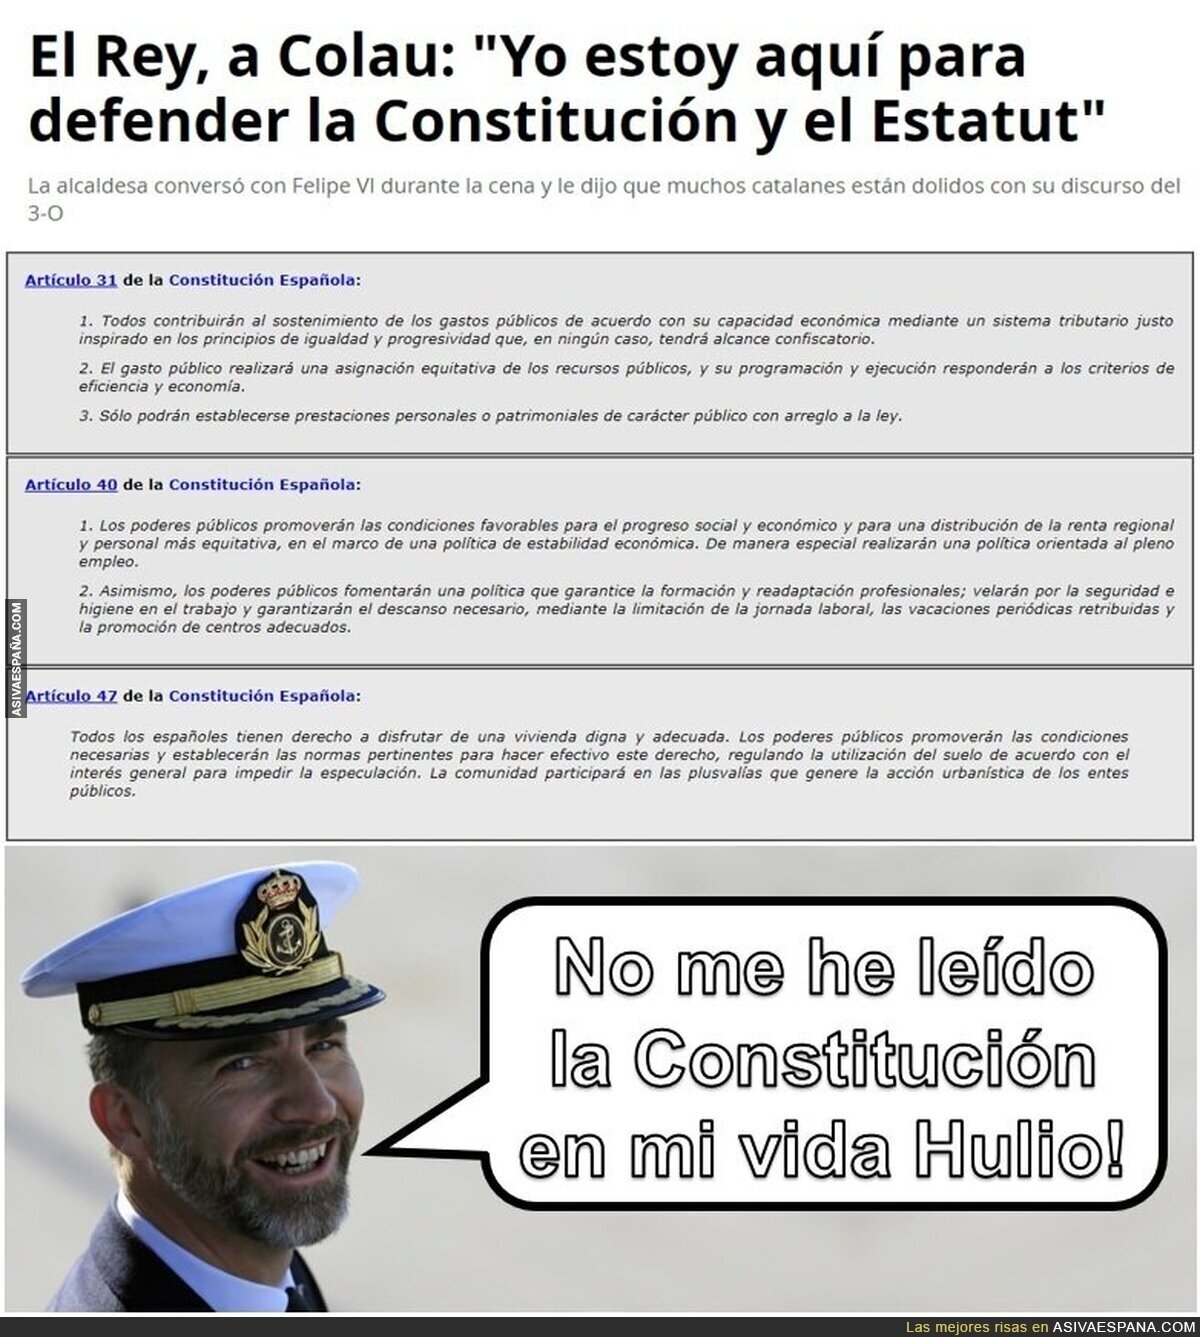 Le dice el Rey a la Alcaldesa de Barcelona: ¡Ada! ¡Lo de la Constitución!